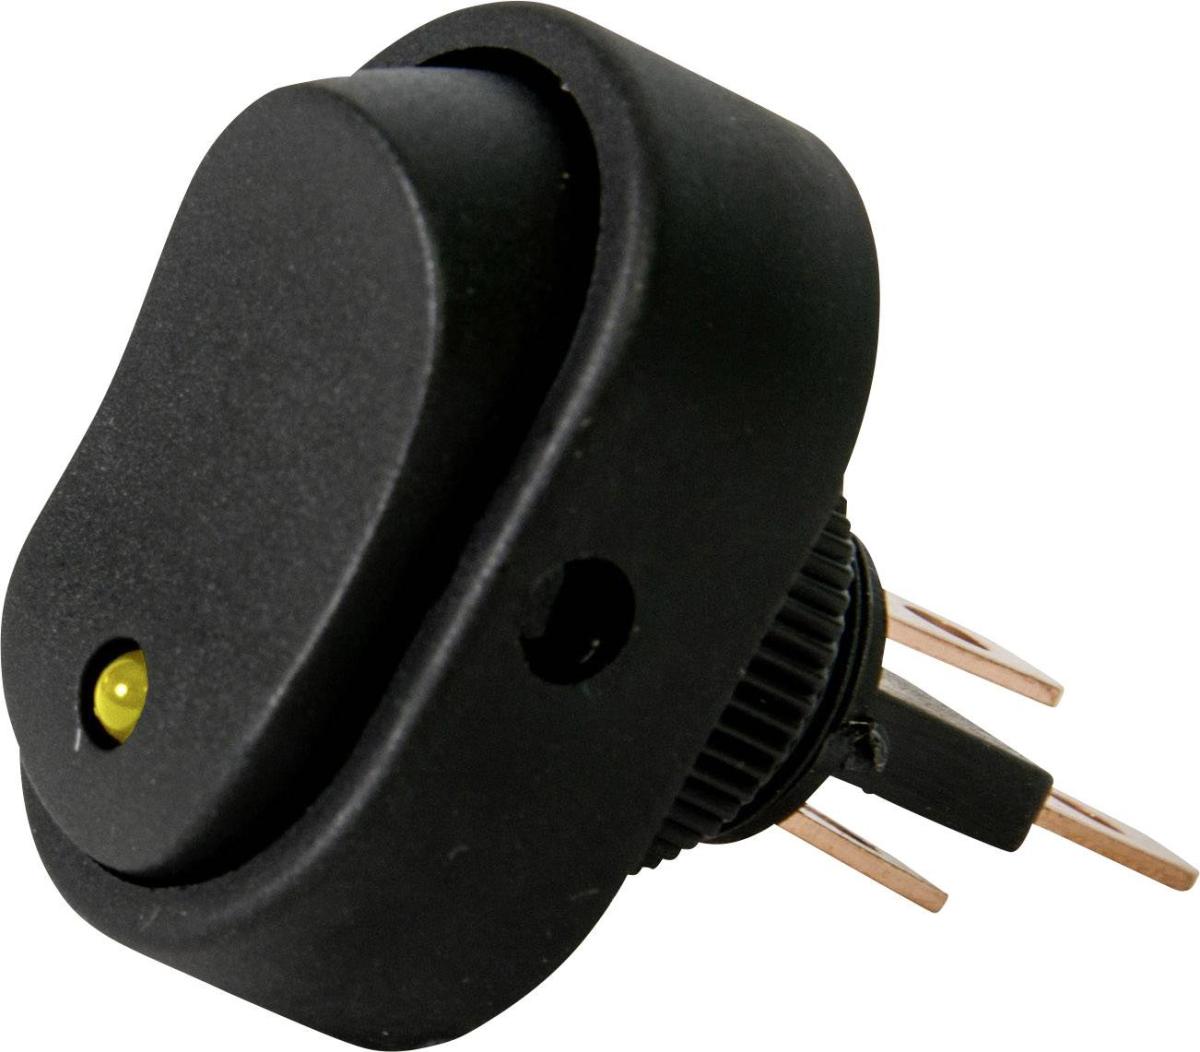 Mini interrupteur à bascule ON-OFF - Perçage ø 10 mm - Avec voyant à LED 12V